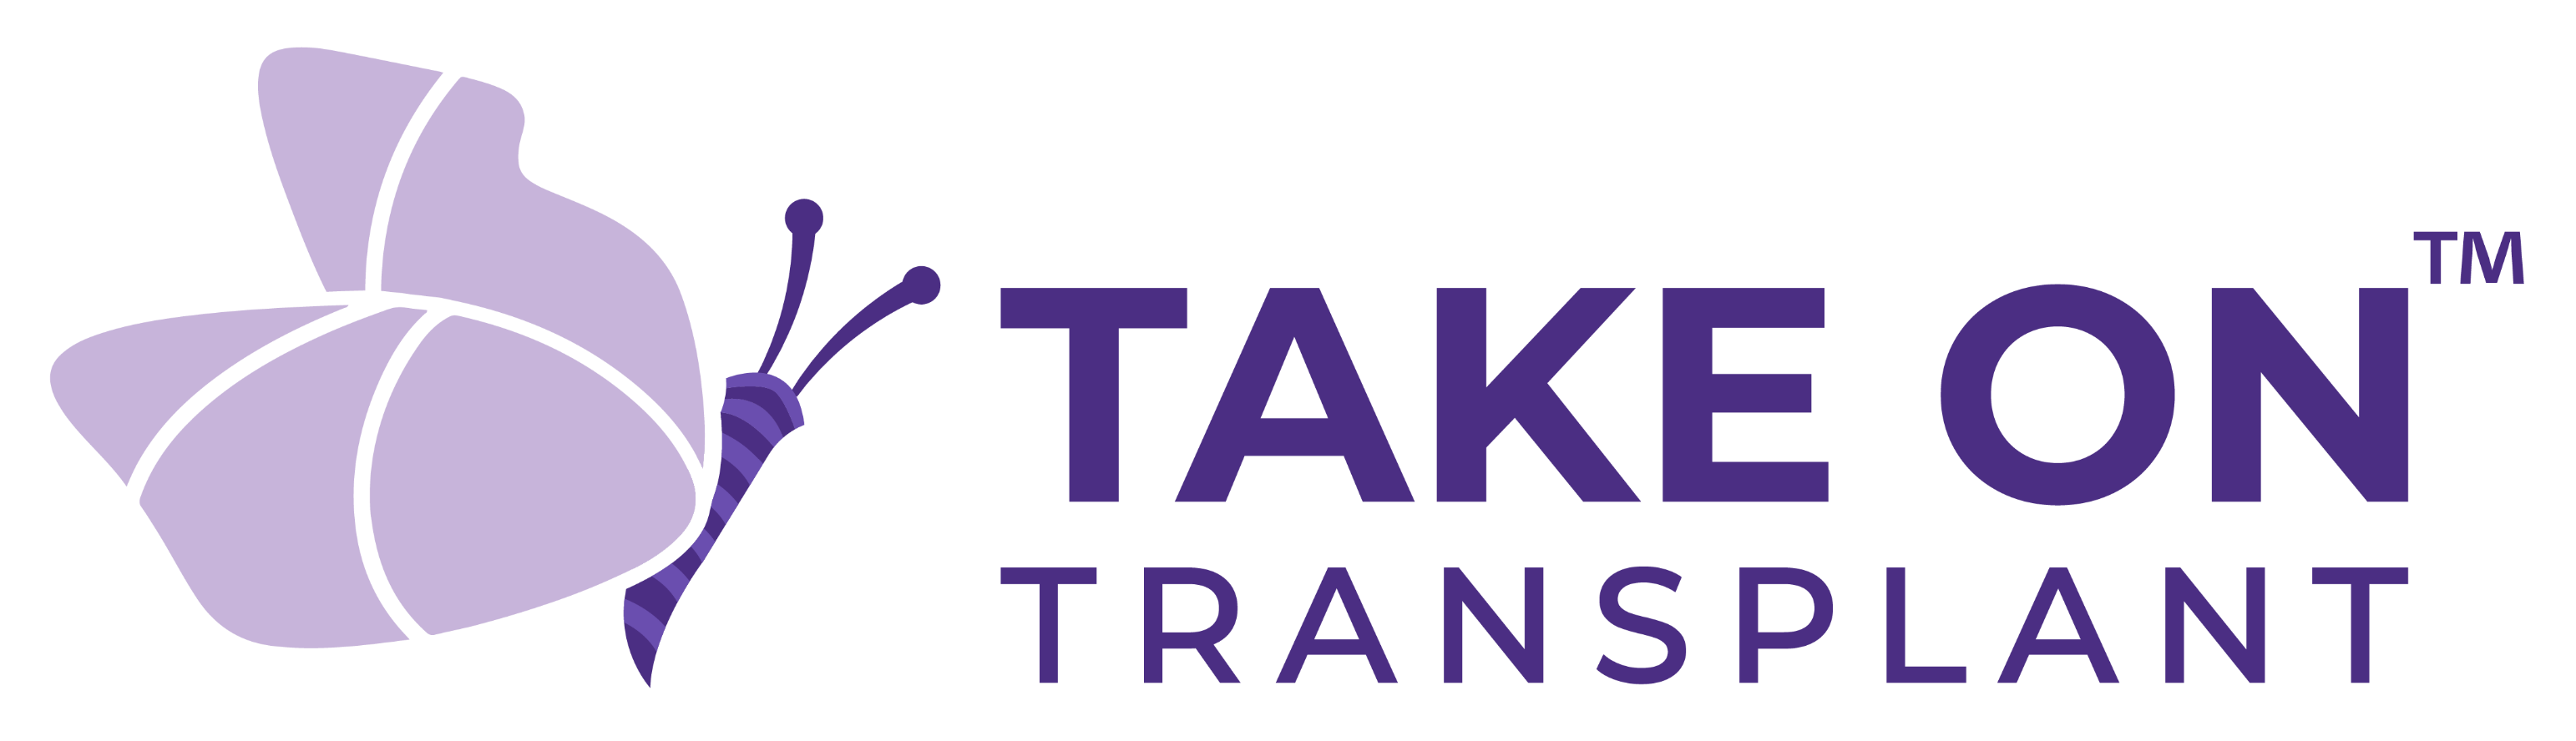 Take on Transplant